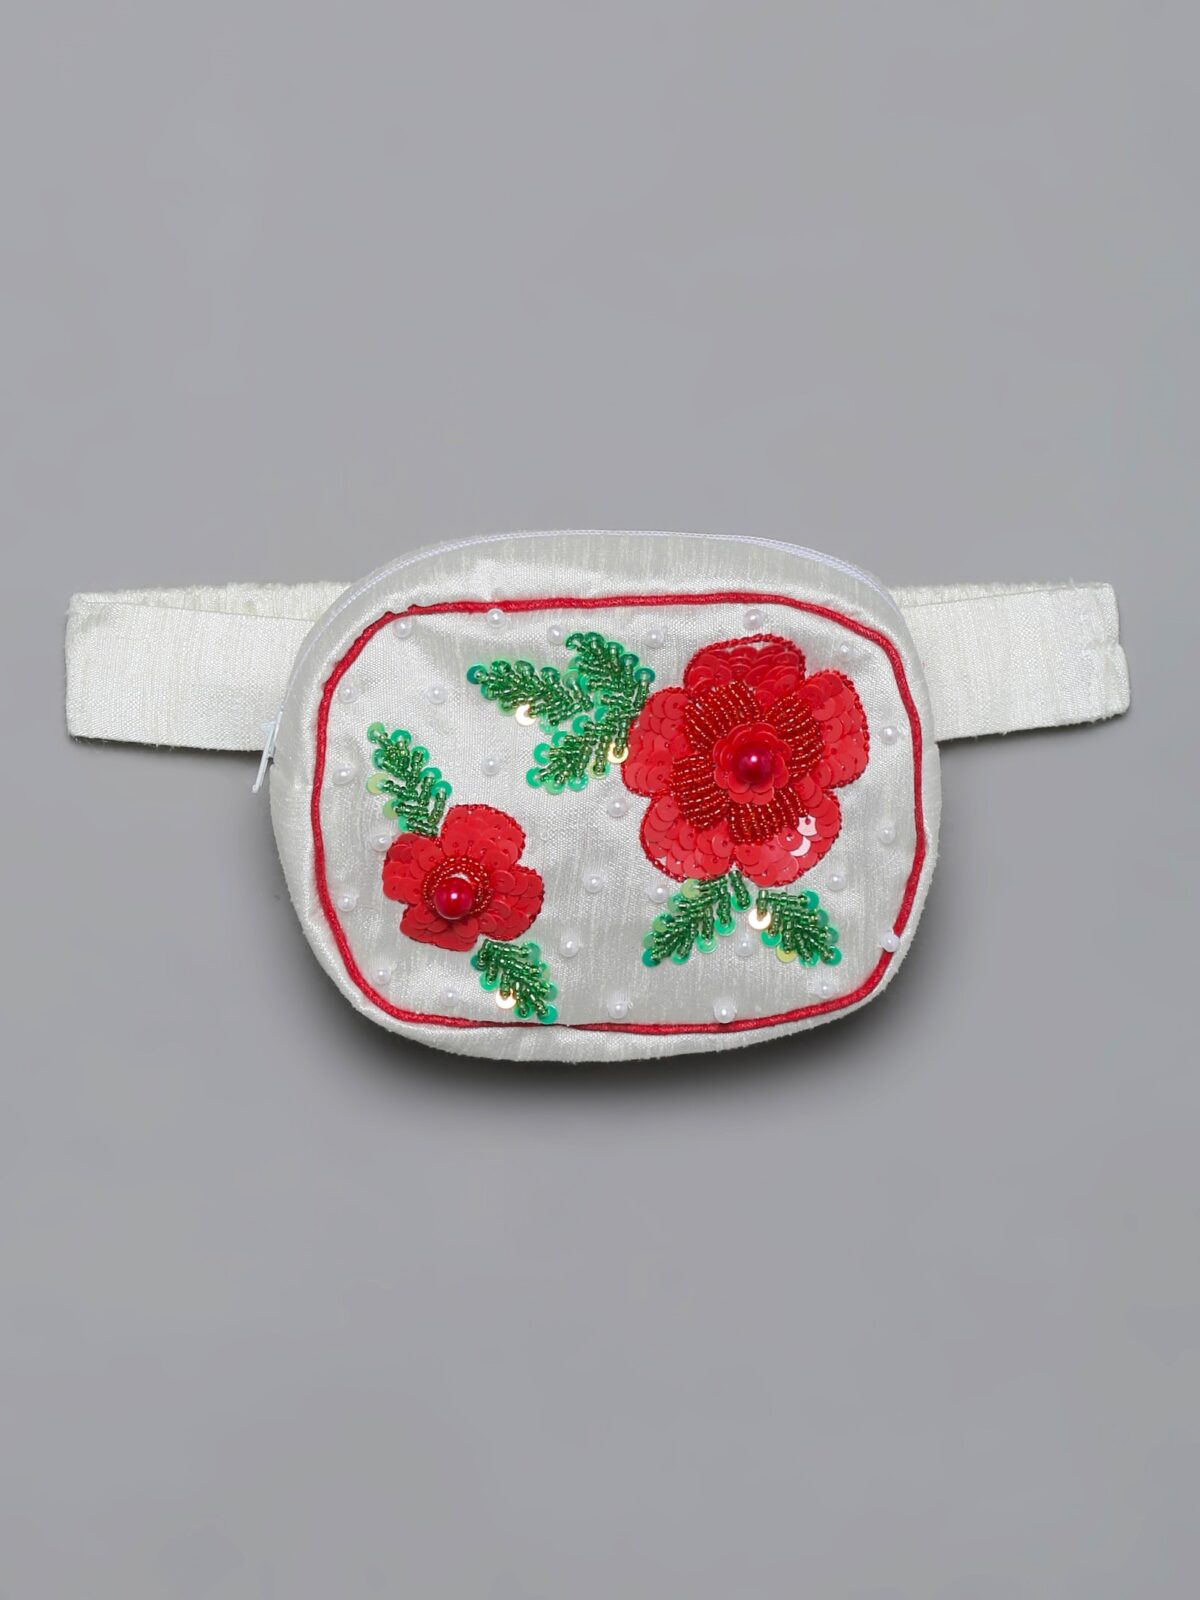 7 13 Red & White Roses Lehenga Choli Set with Belt Bag